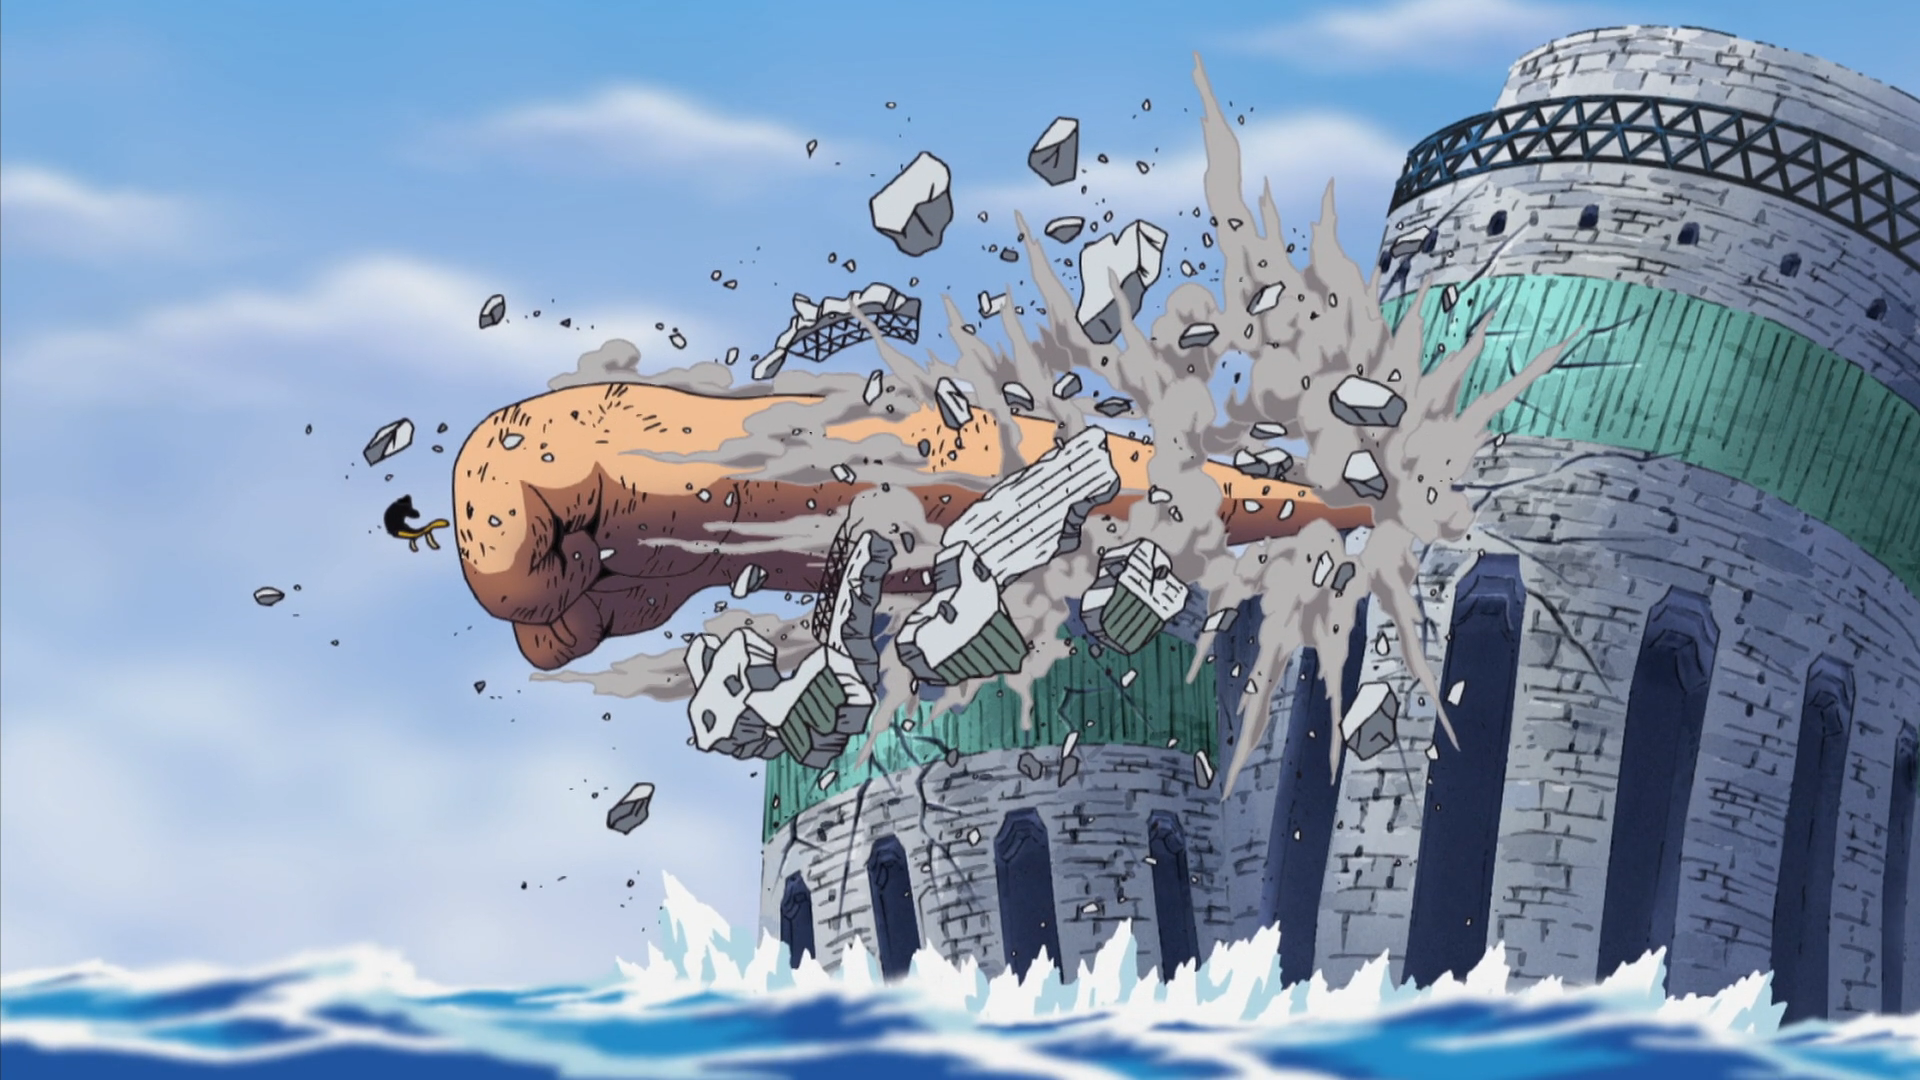 Gomu Gomu no Mi/Gear Fifth, One Piece Wiki